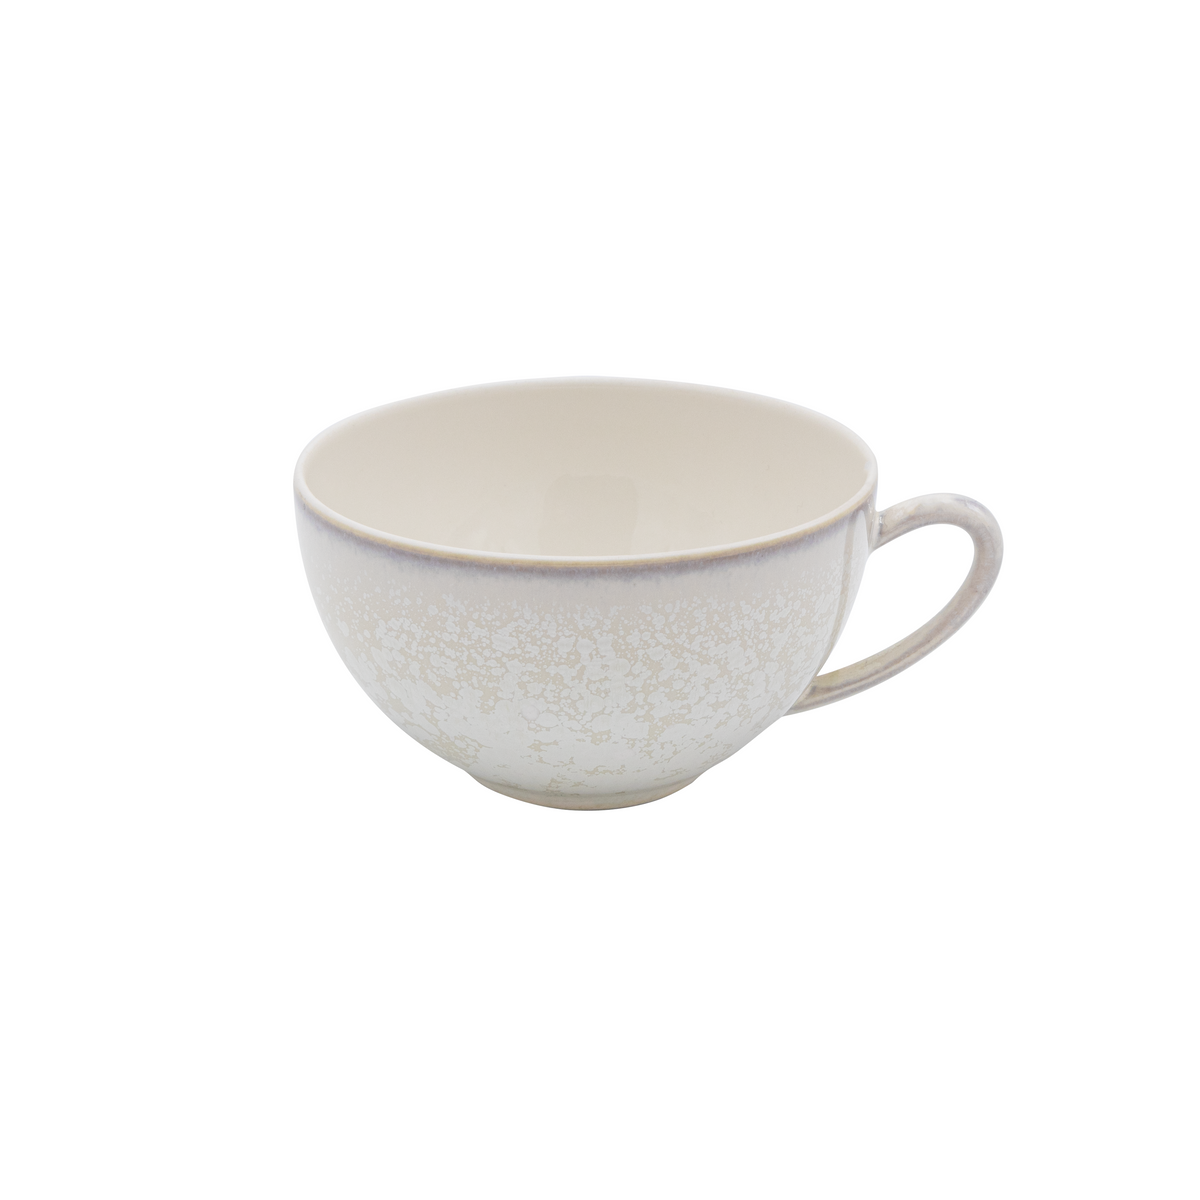 SONG Perle - Tea set (cup & saucer)